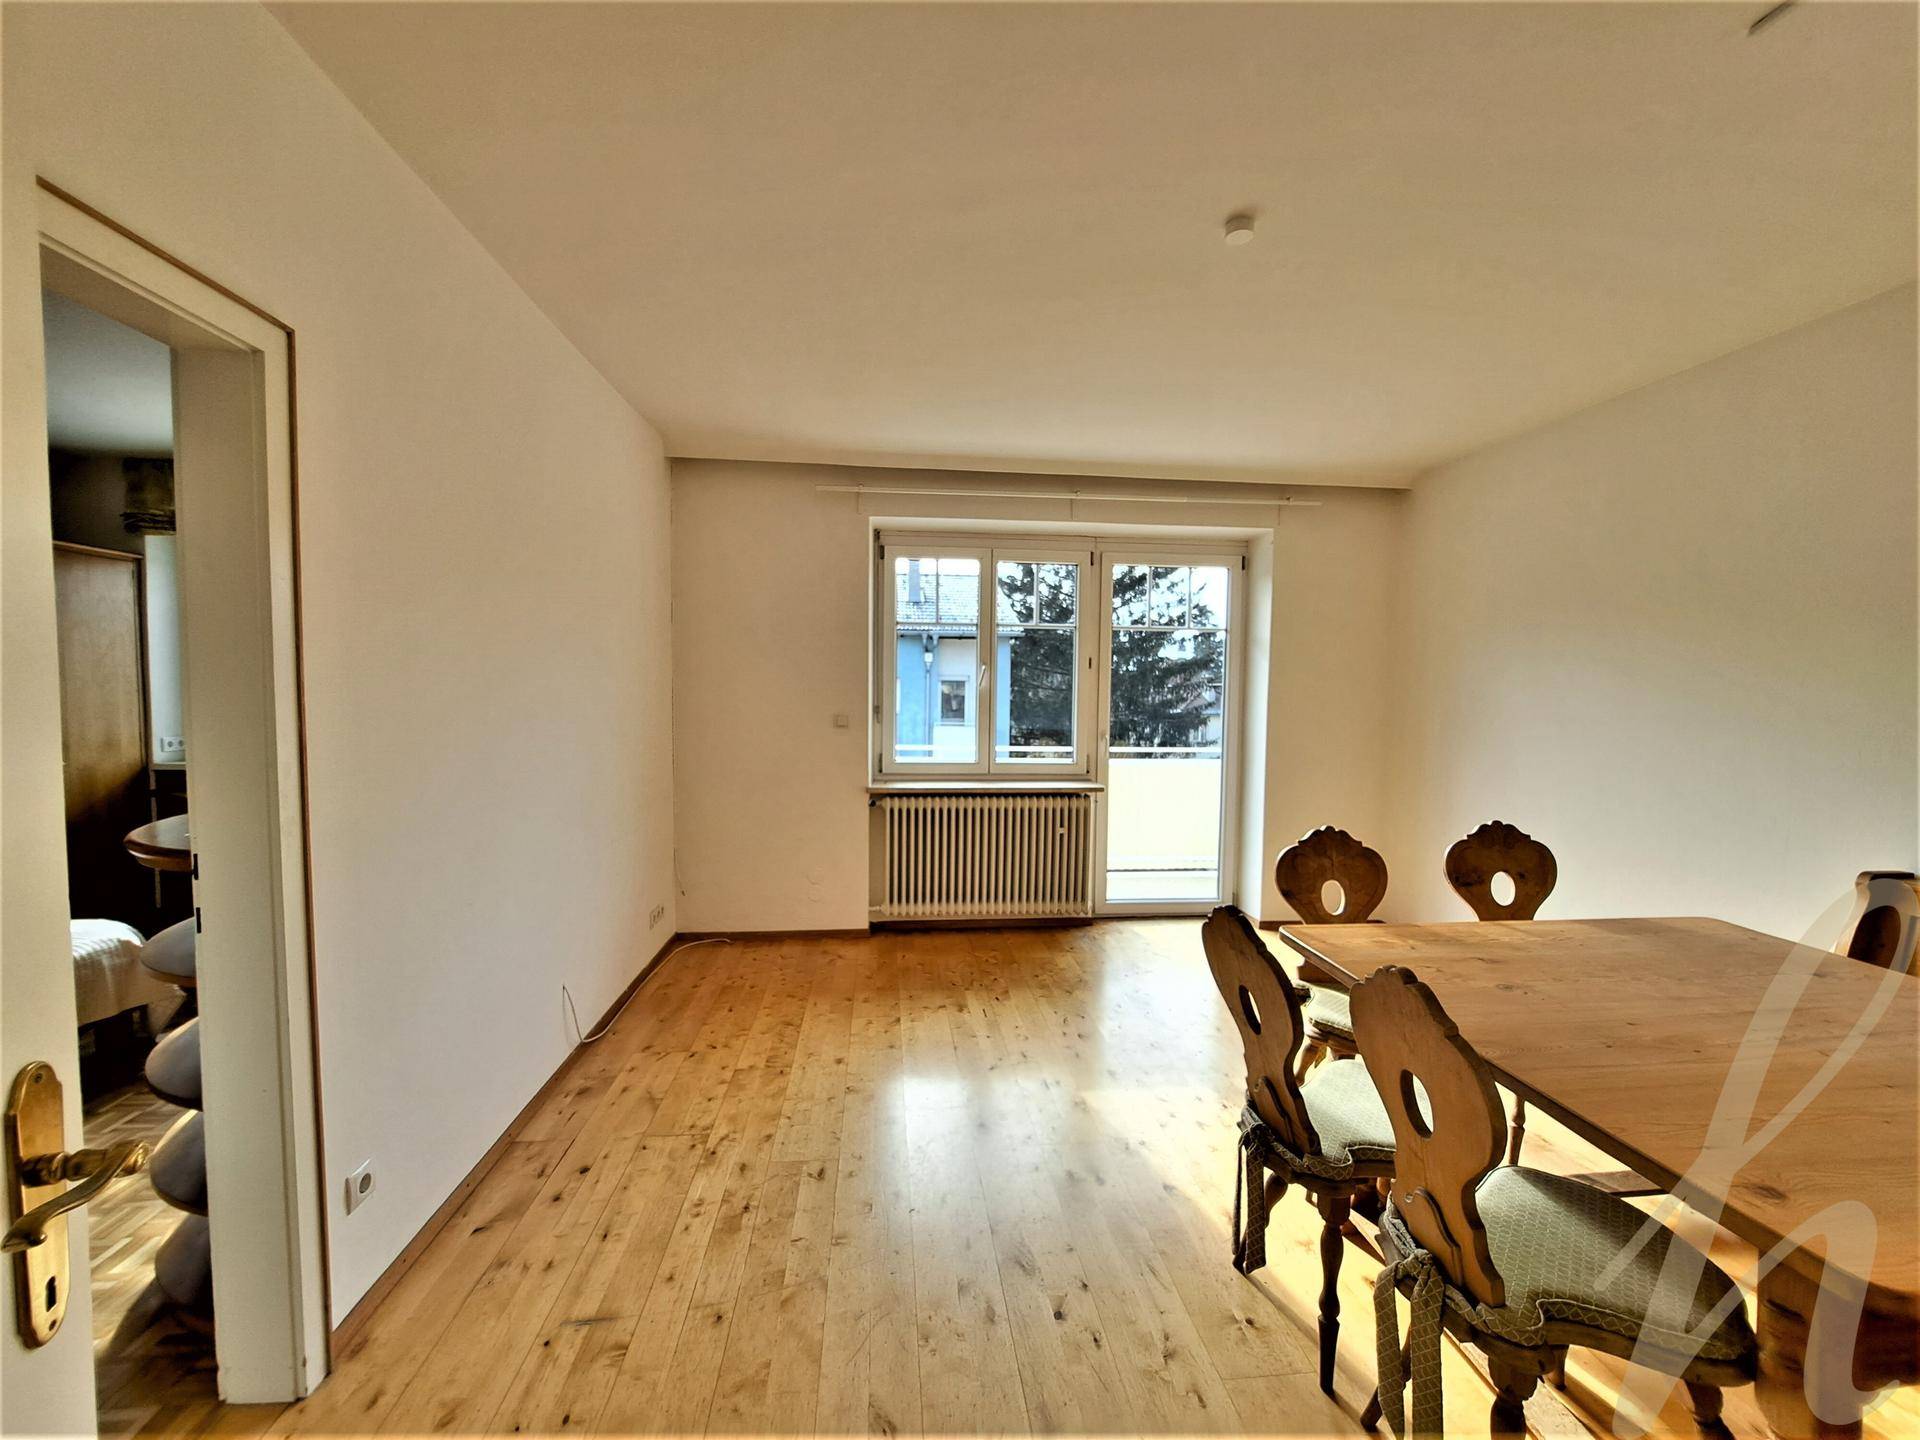 3-Zimmer-Wohnung Innsbruck - petrahuber-immobilien TIROL